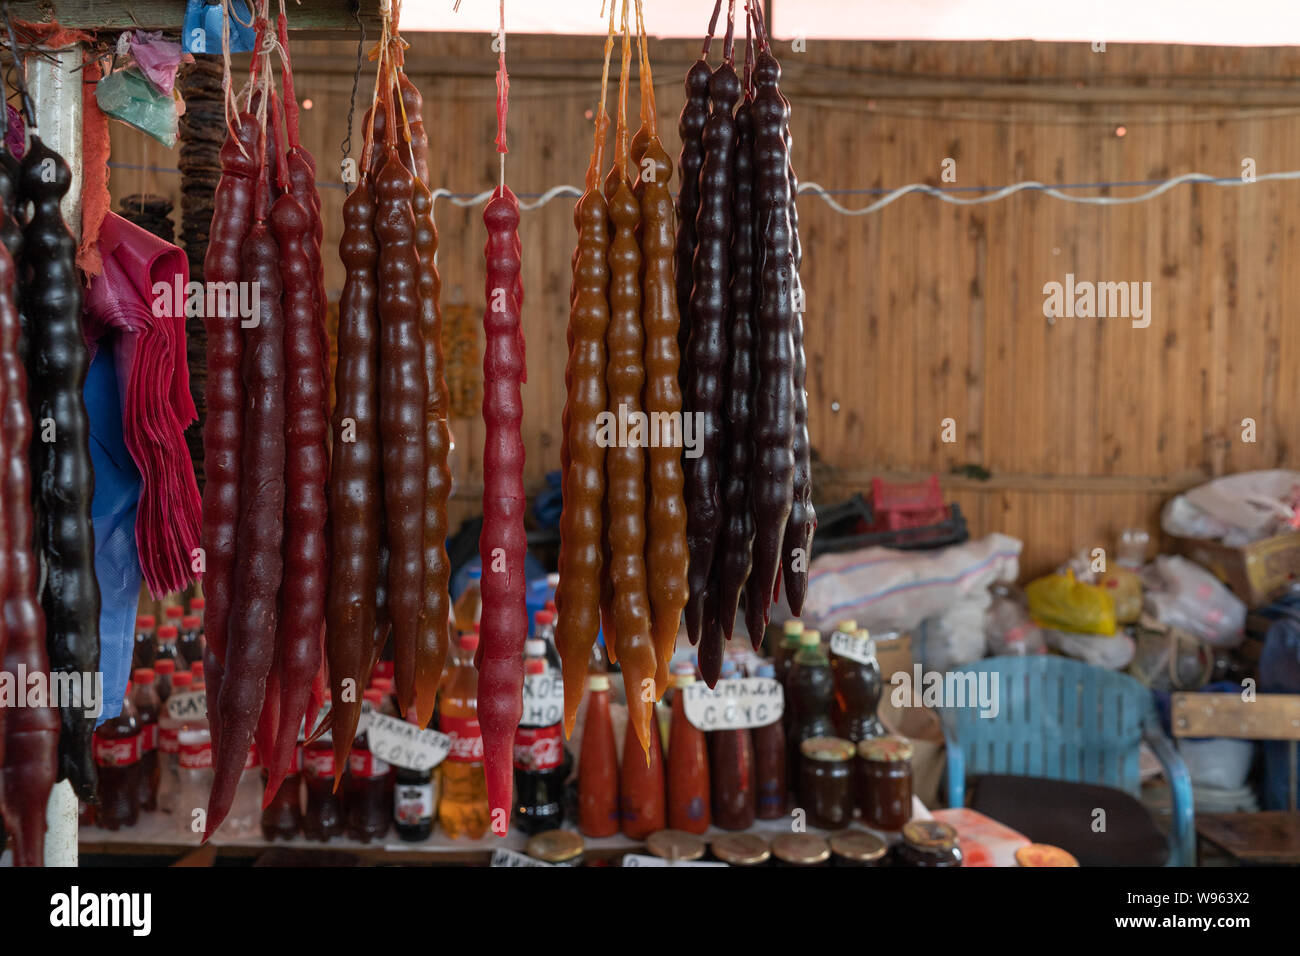 Traditionelle georgische Spezialitäten - Churchkhela, aus Traubenmost hergestellt, Granatapfelsaft und Muttern auf dem Markt in Tiflis, Georgien verkauft Stockfoto